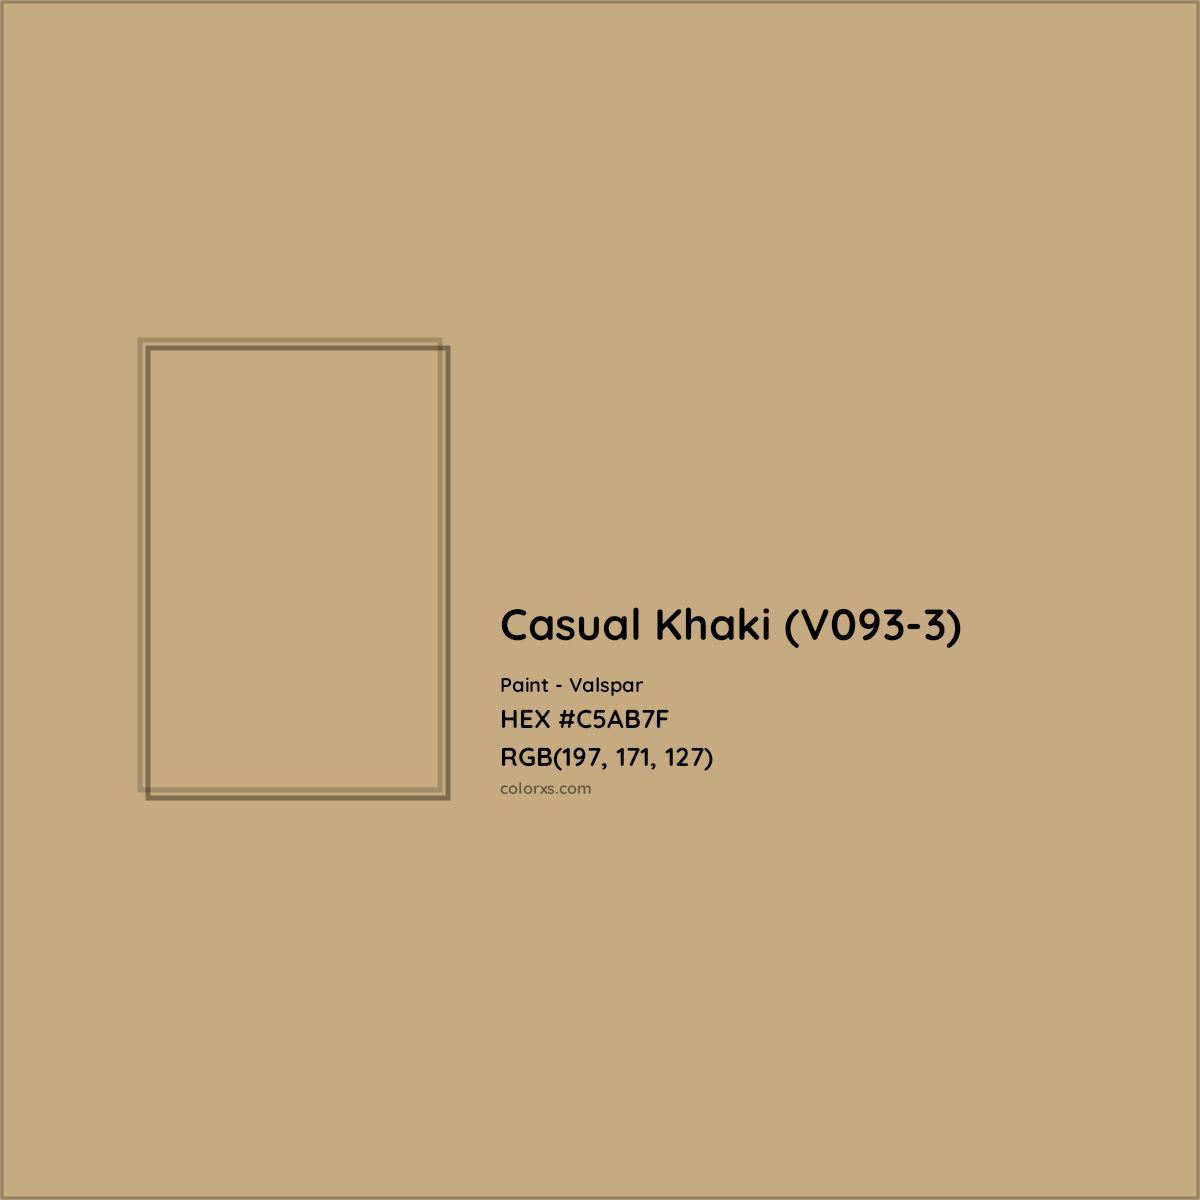 HEX #C5AB7F Casual Khaki (V093-3) Paint Valspar - Color Code